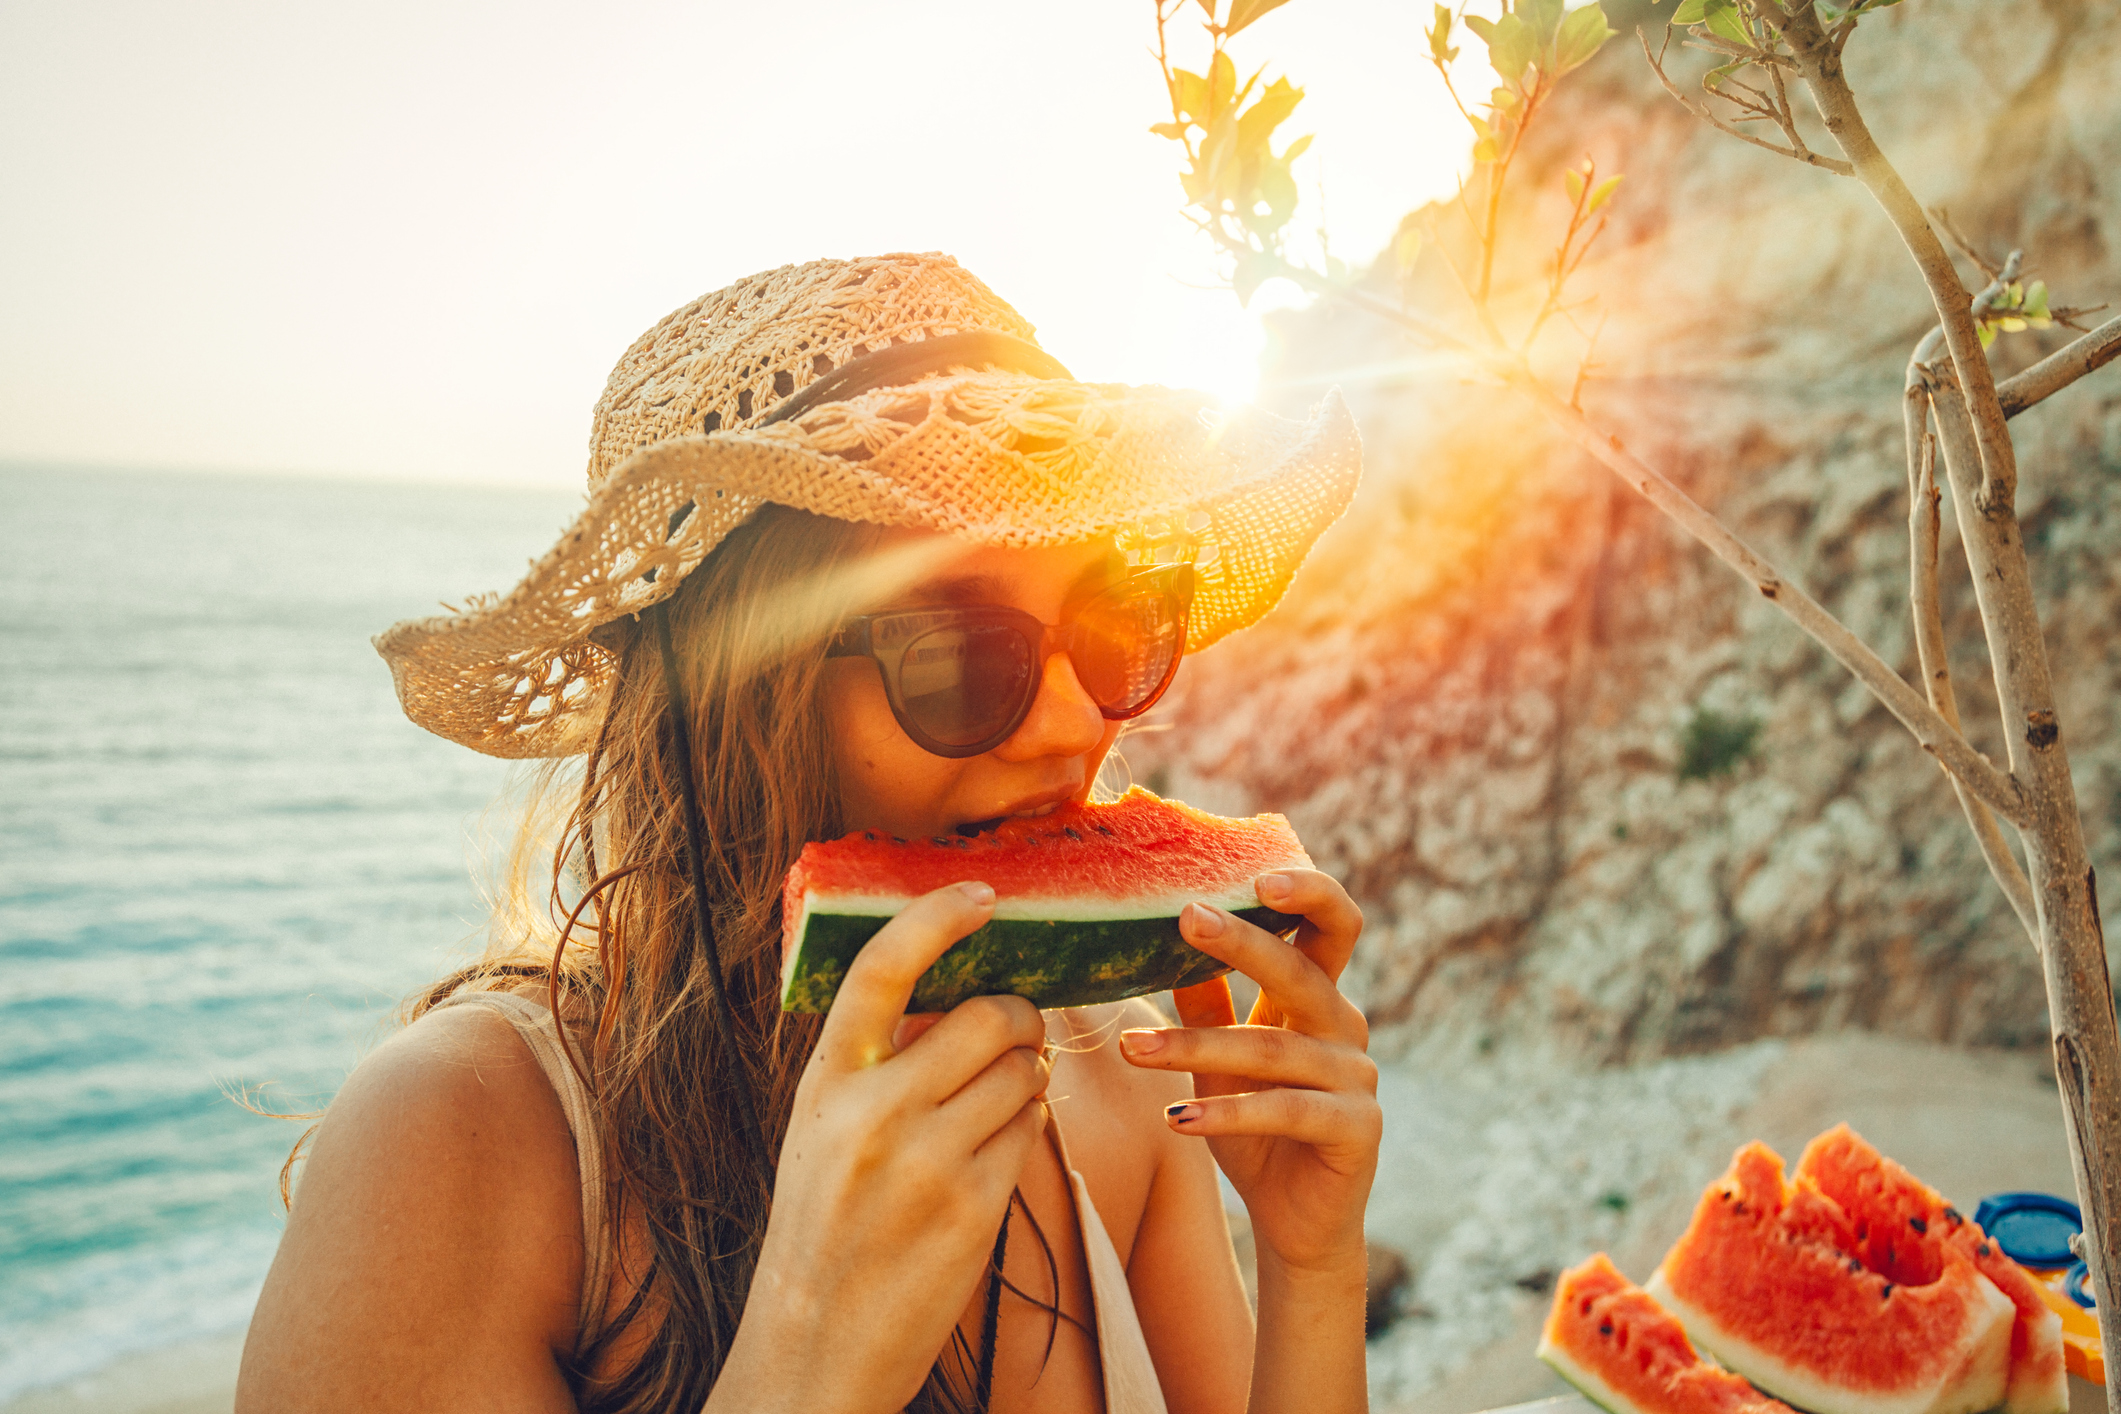 Τα σνακ της παραλίας – 10 απολαυστικές και θρεπτικές επιλογές!